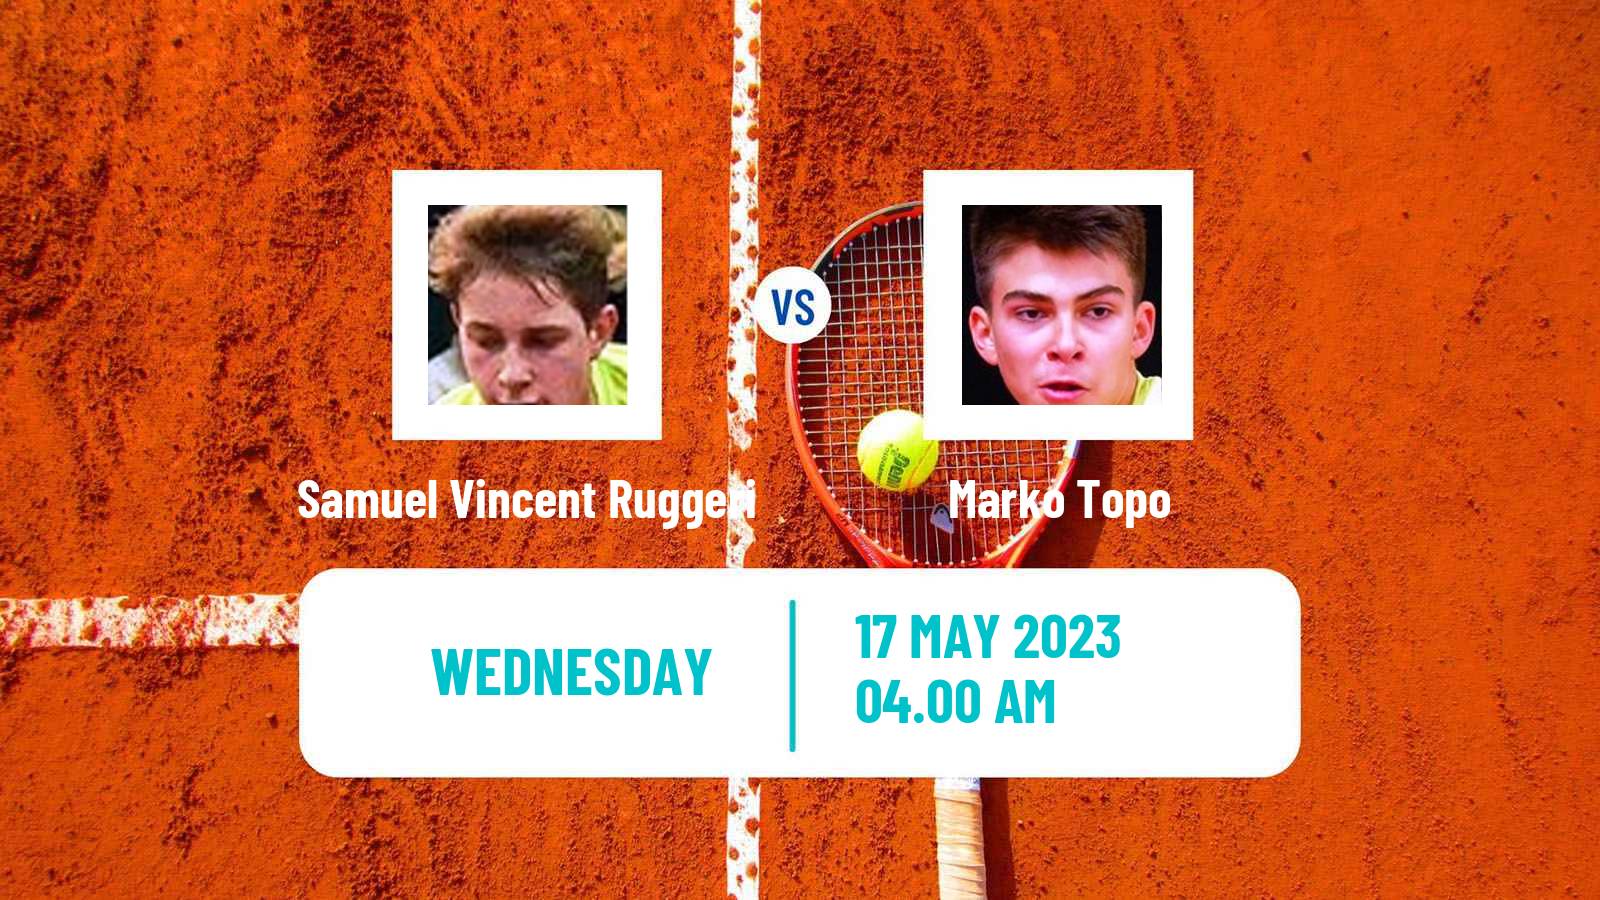 Tennis ITF M25 Kursumlijska Banja 2 Men Samuel Vincent Ruggeri - Marko Topo